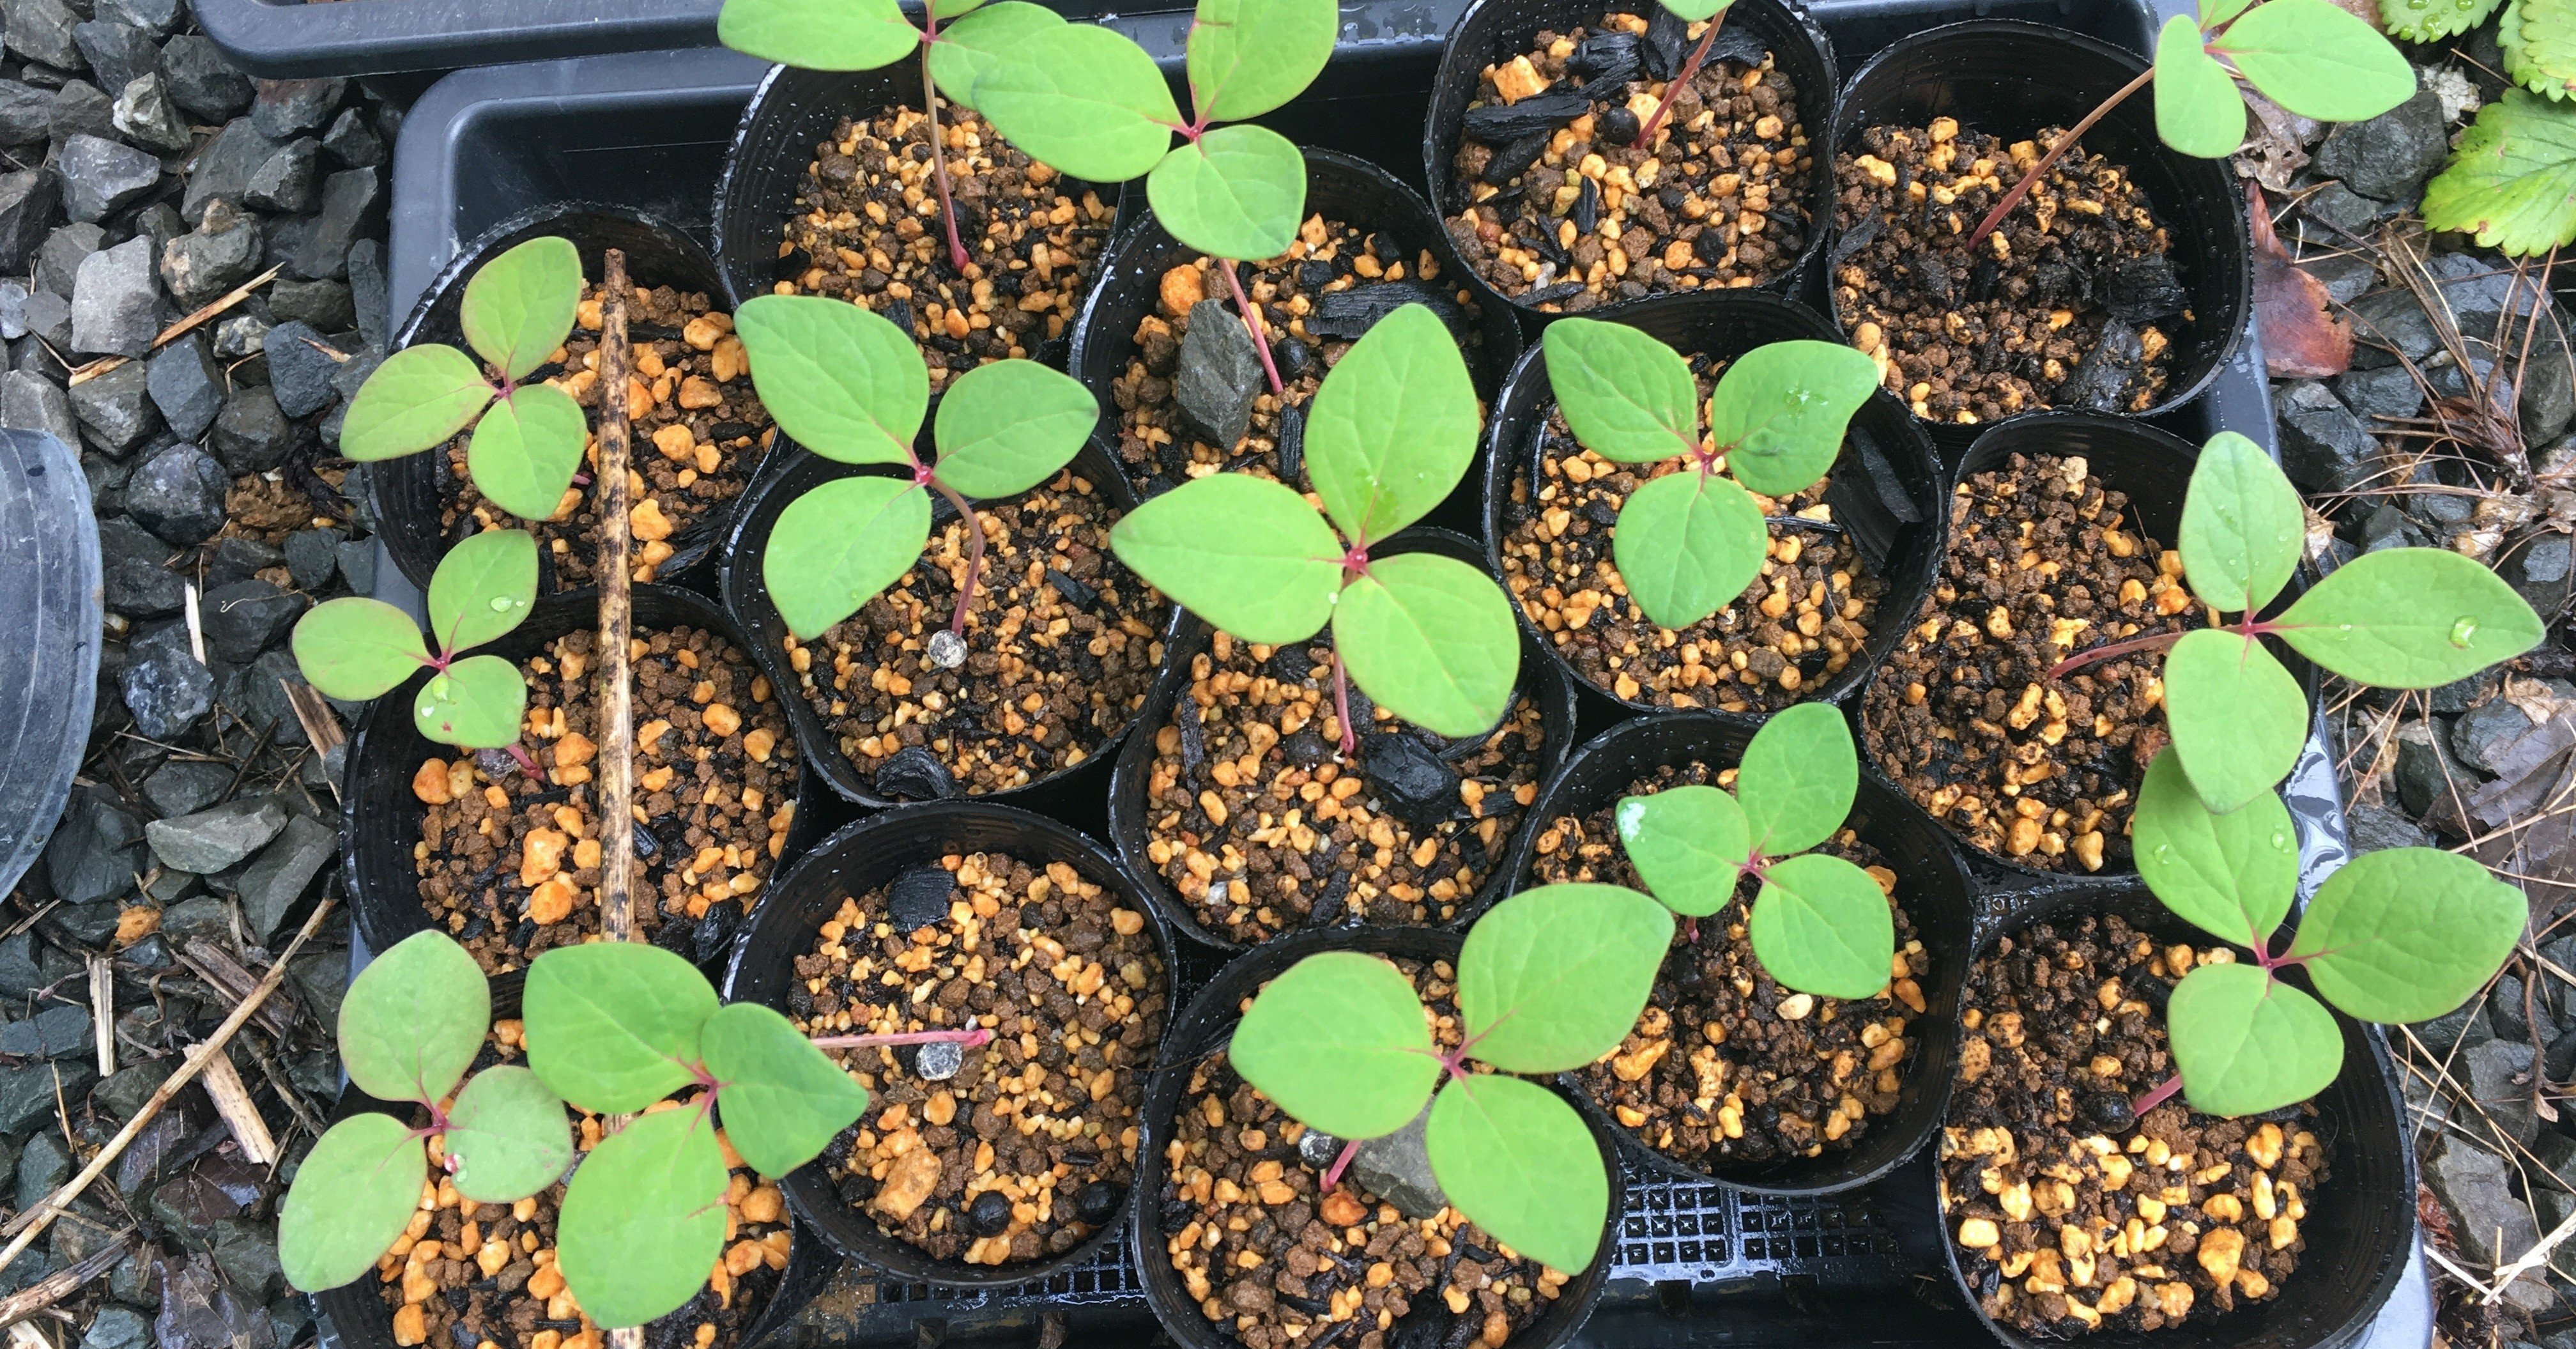 ベニバナヤマシャクヤクの植え替え 和花奈の種から栽培 Note